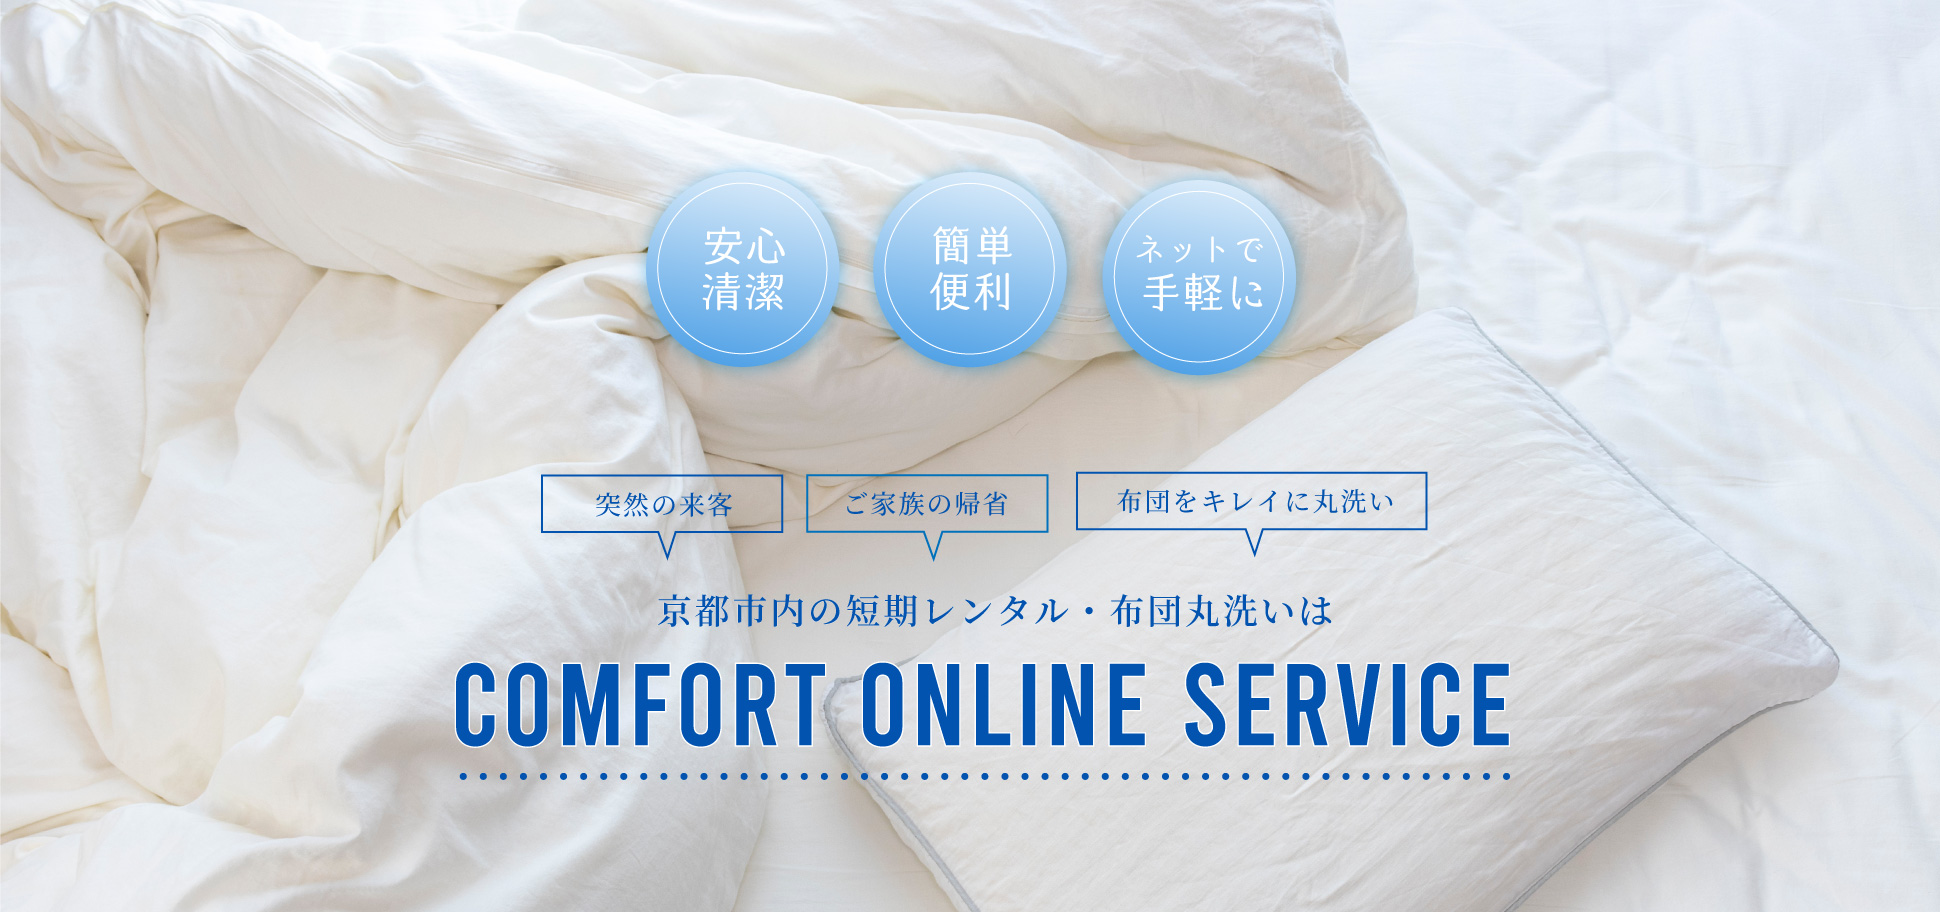 京都市内の短期レンタル・布団丸洗いはコンフォートオンラインサービス